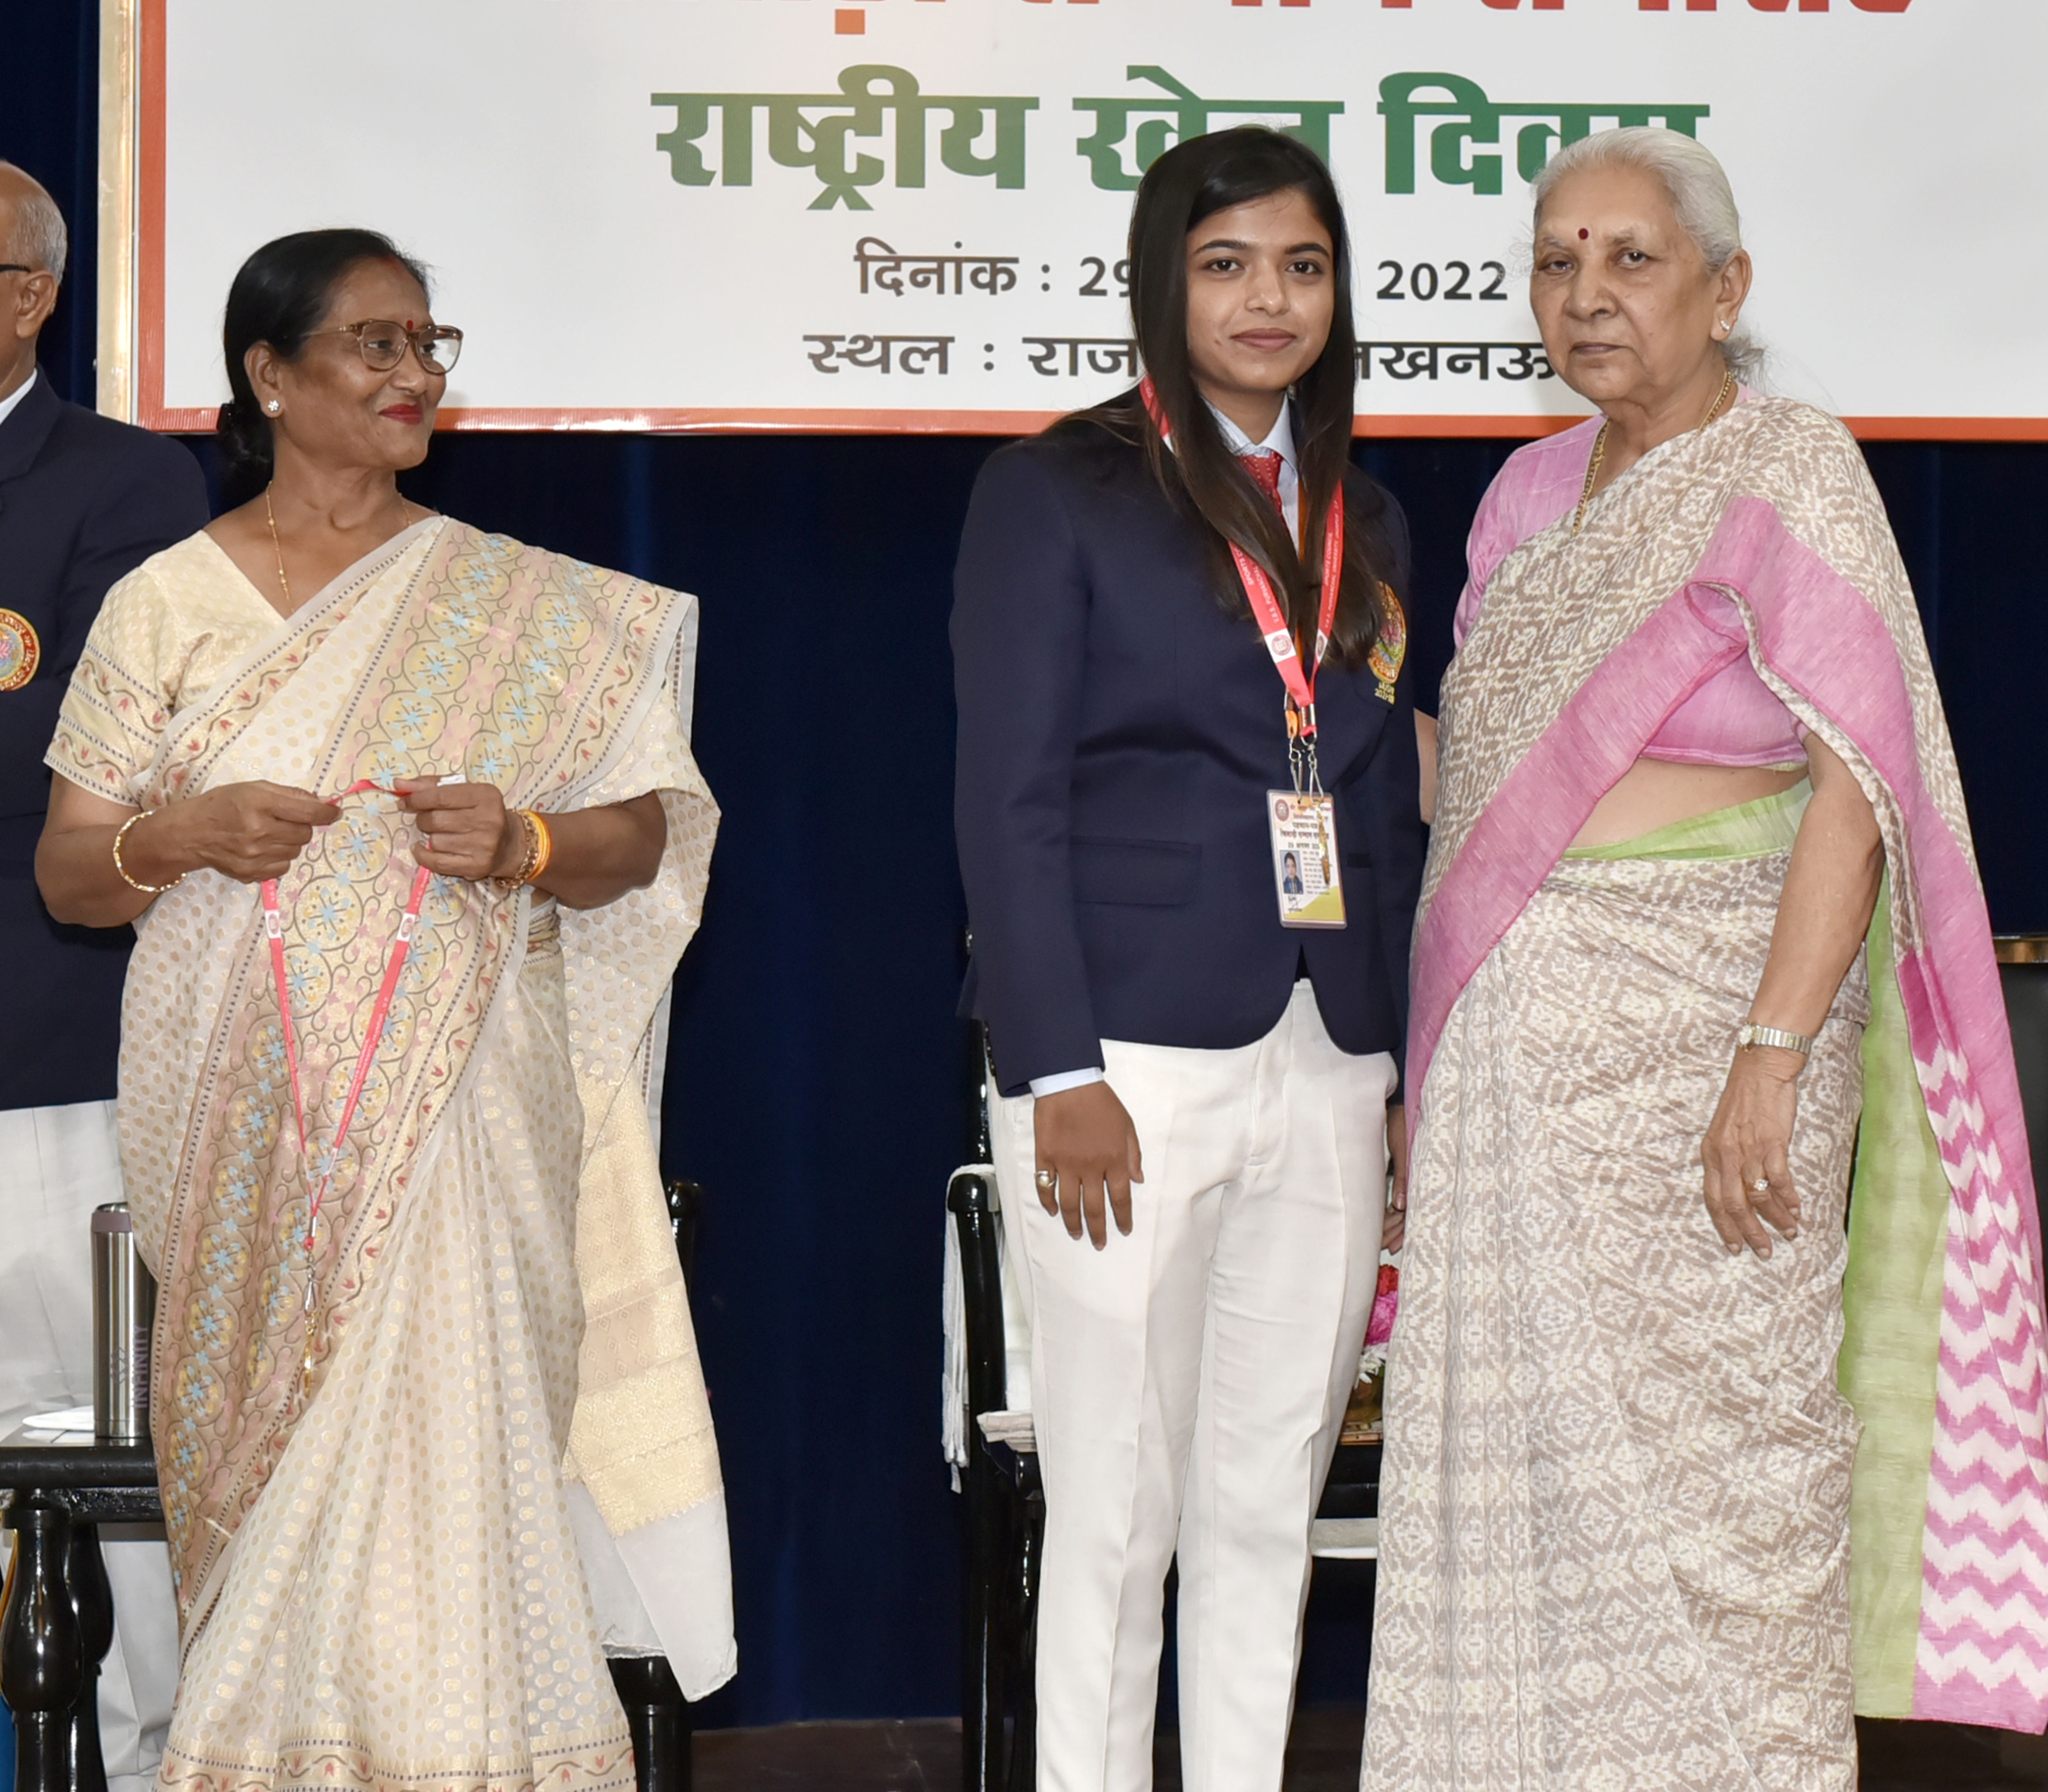 राज्यपाल ने वीर बहादुर सिंह पूर्वांचल विश्वविद्यालय, जौनपुर के खिलाड़ियों को सम्मानित किया